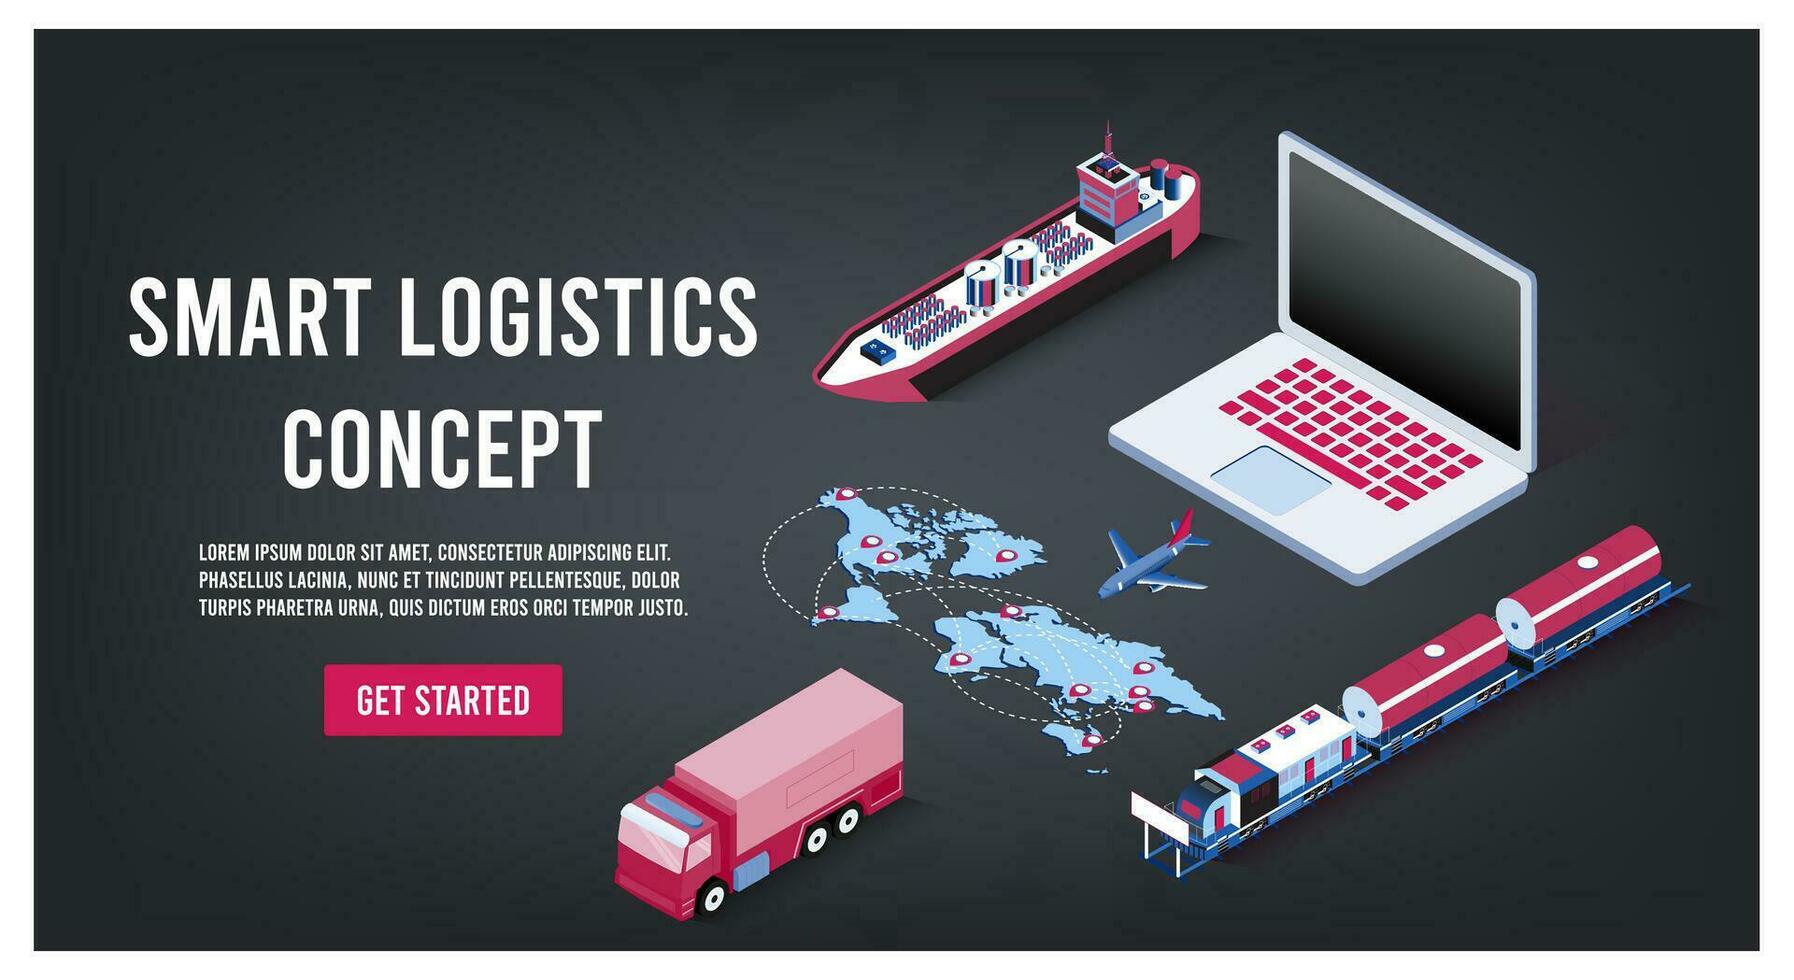 modern globaal logistiek onderhoud concept met exporteren, importeren, magazijn bedrijf, vervoer. vector illustratie eps 10